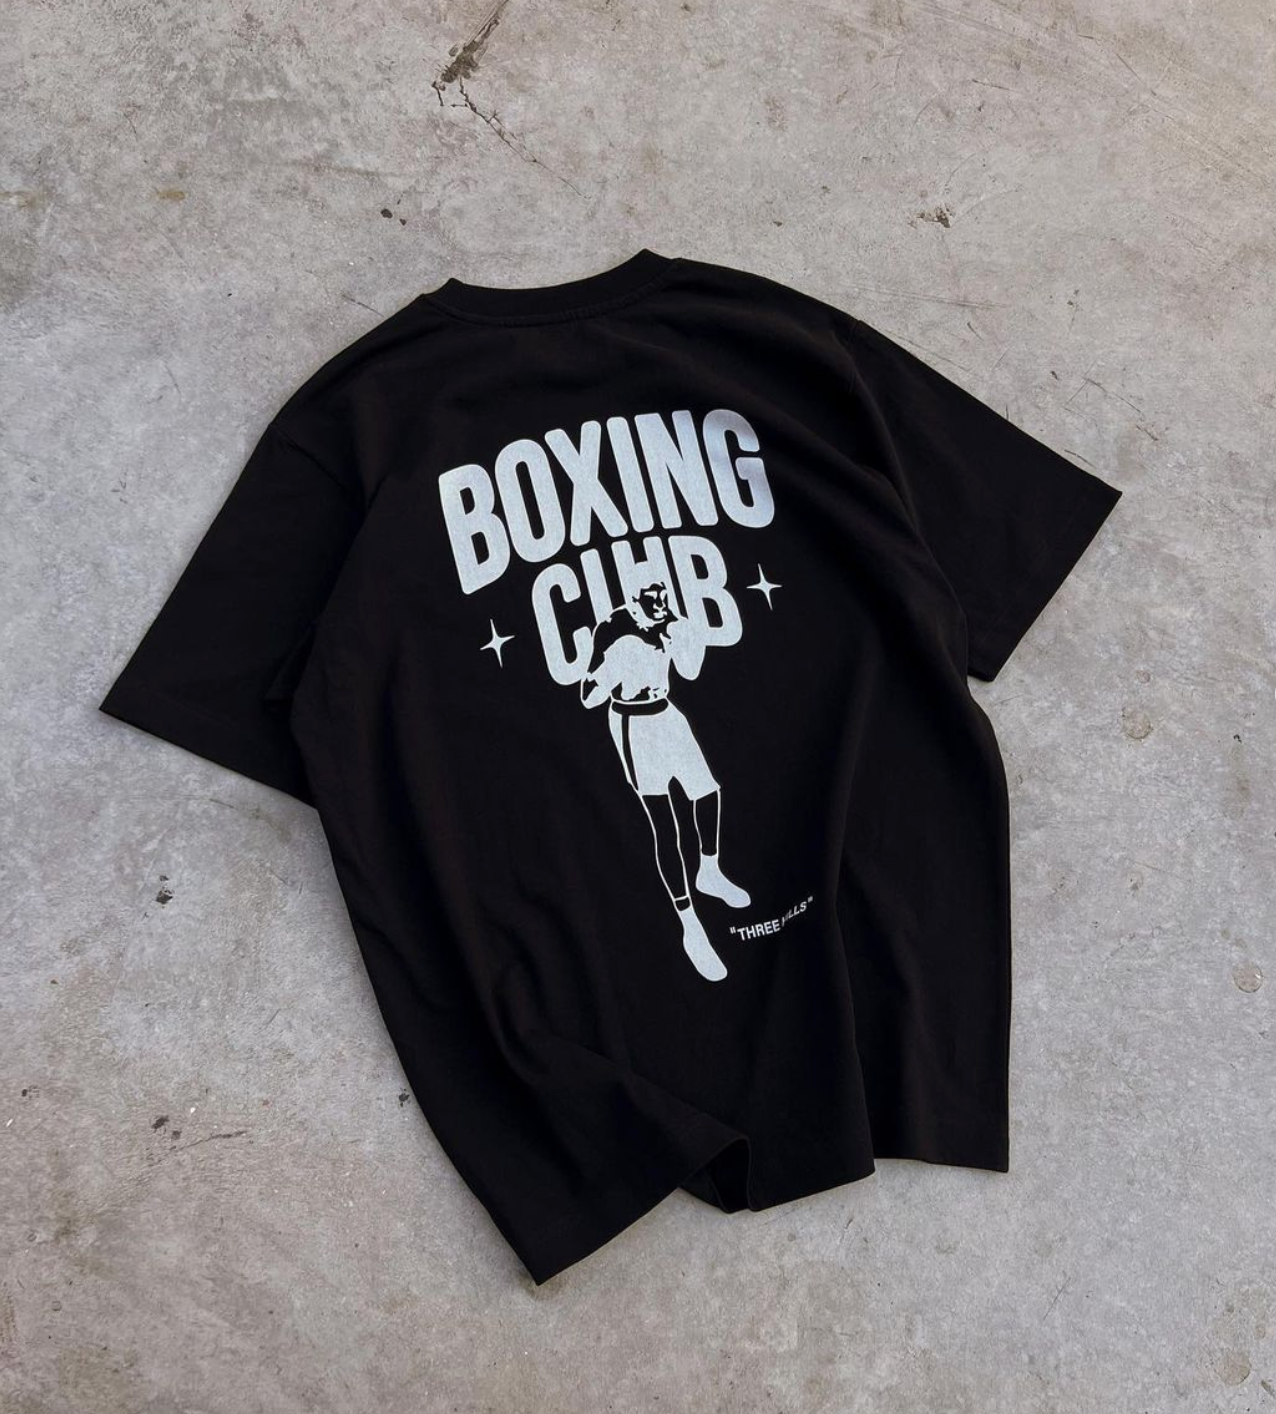 Boxing T-Shirt Black